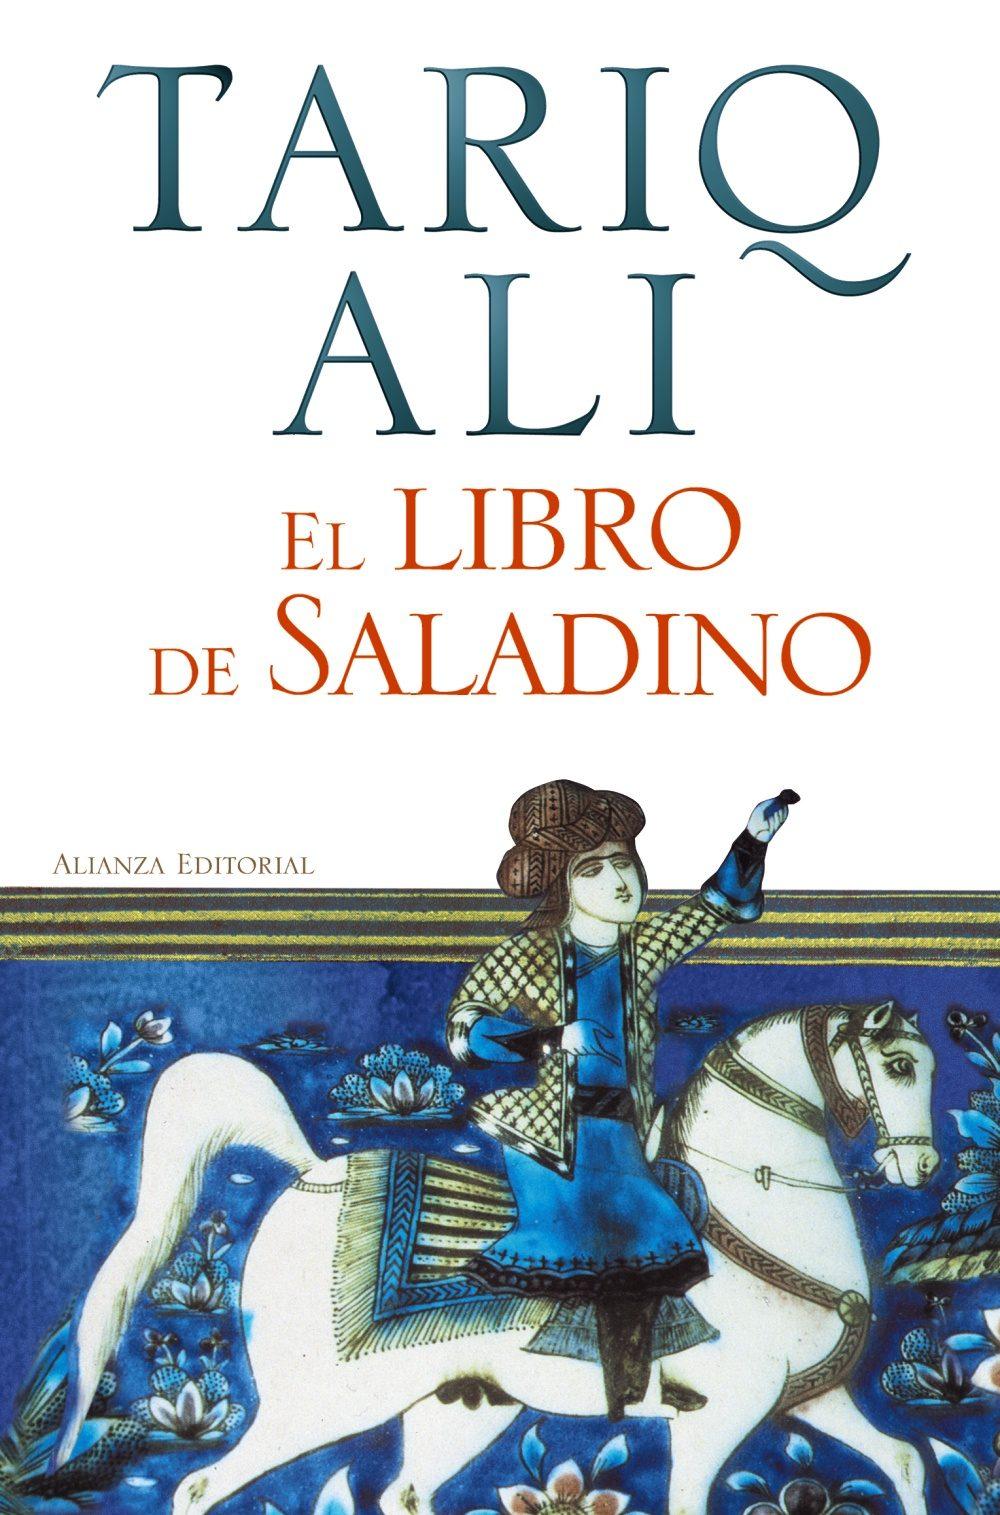 El libro de Saladino